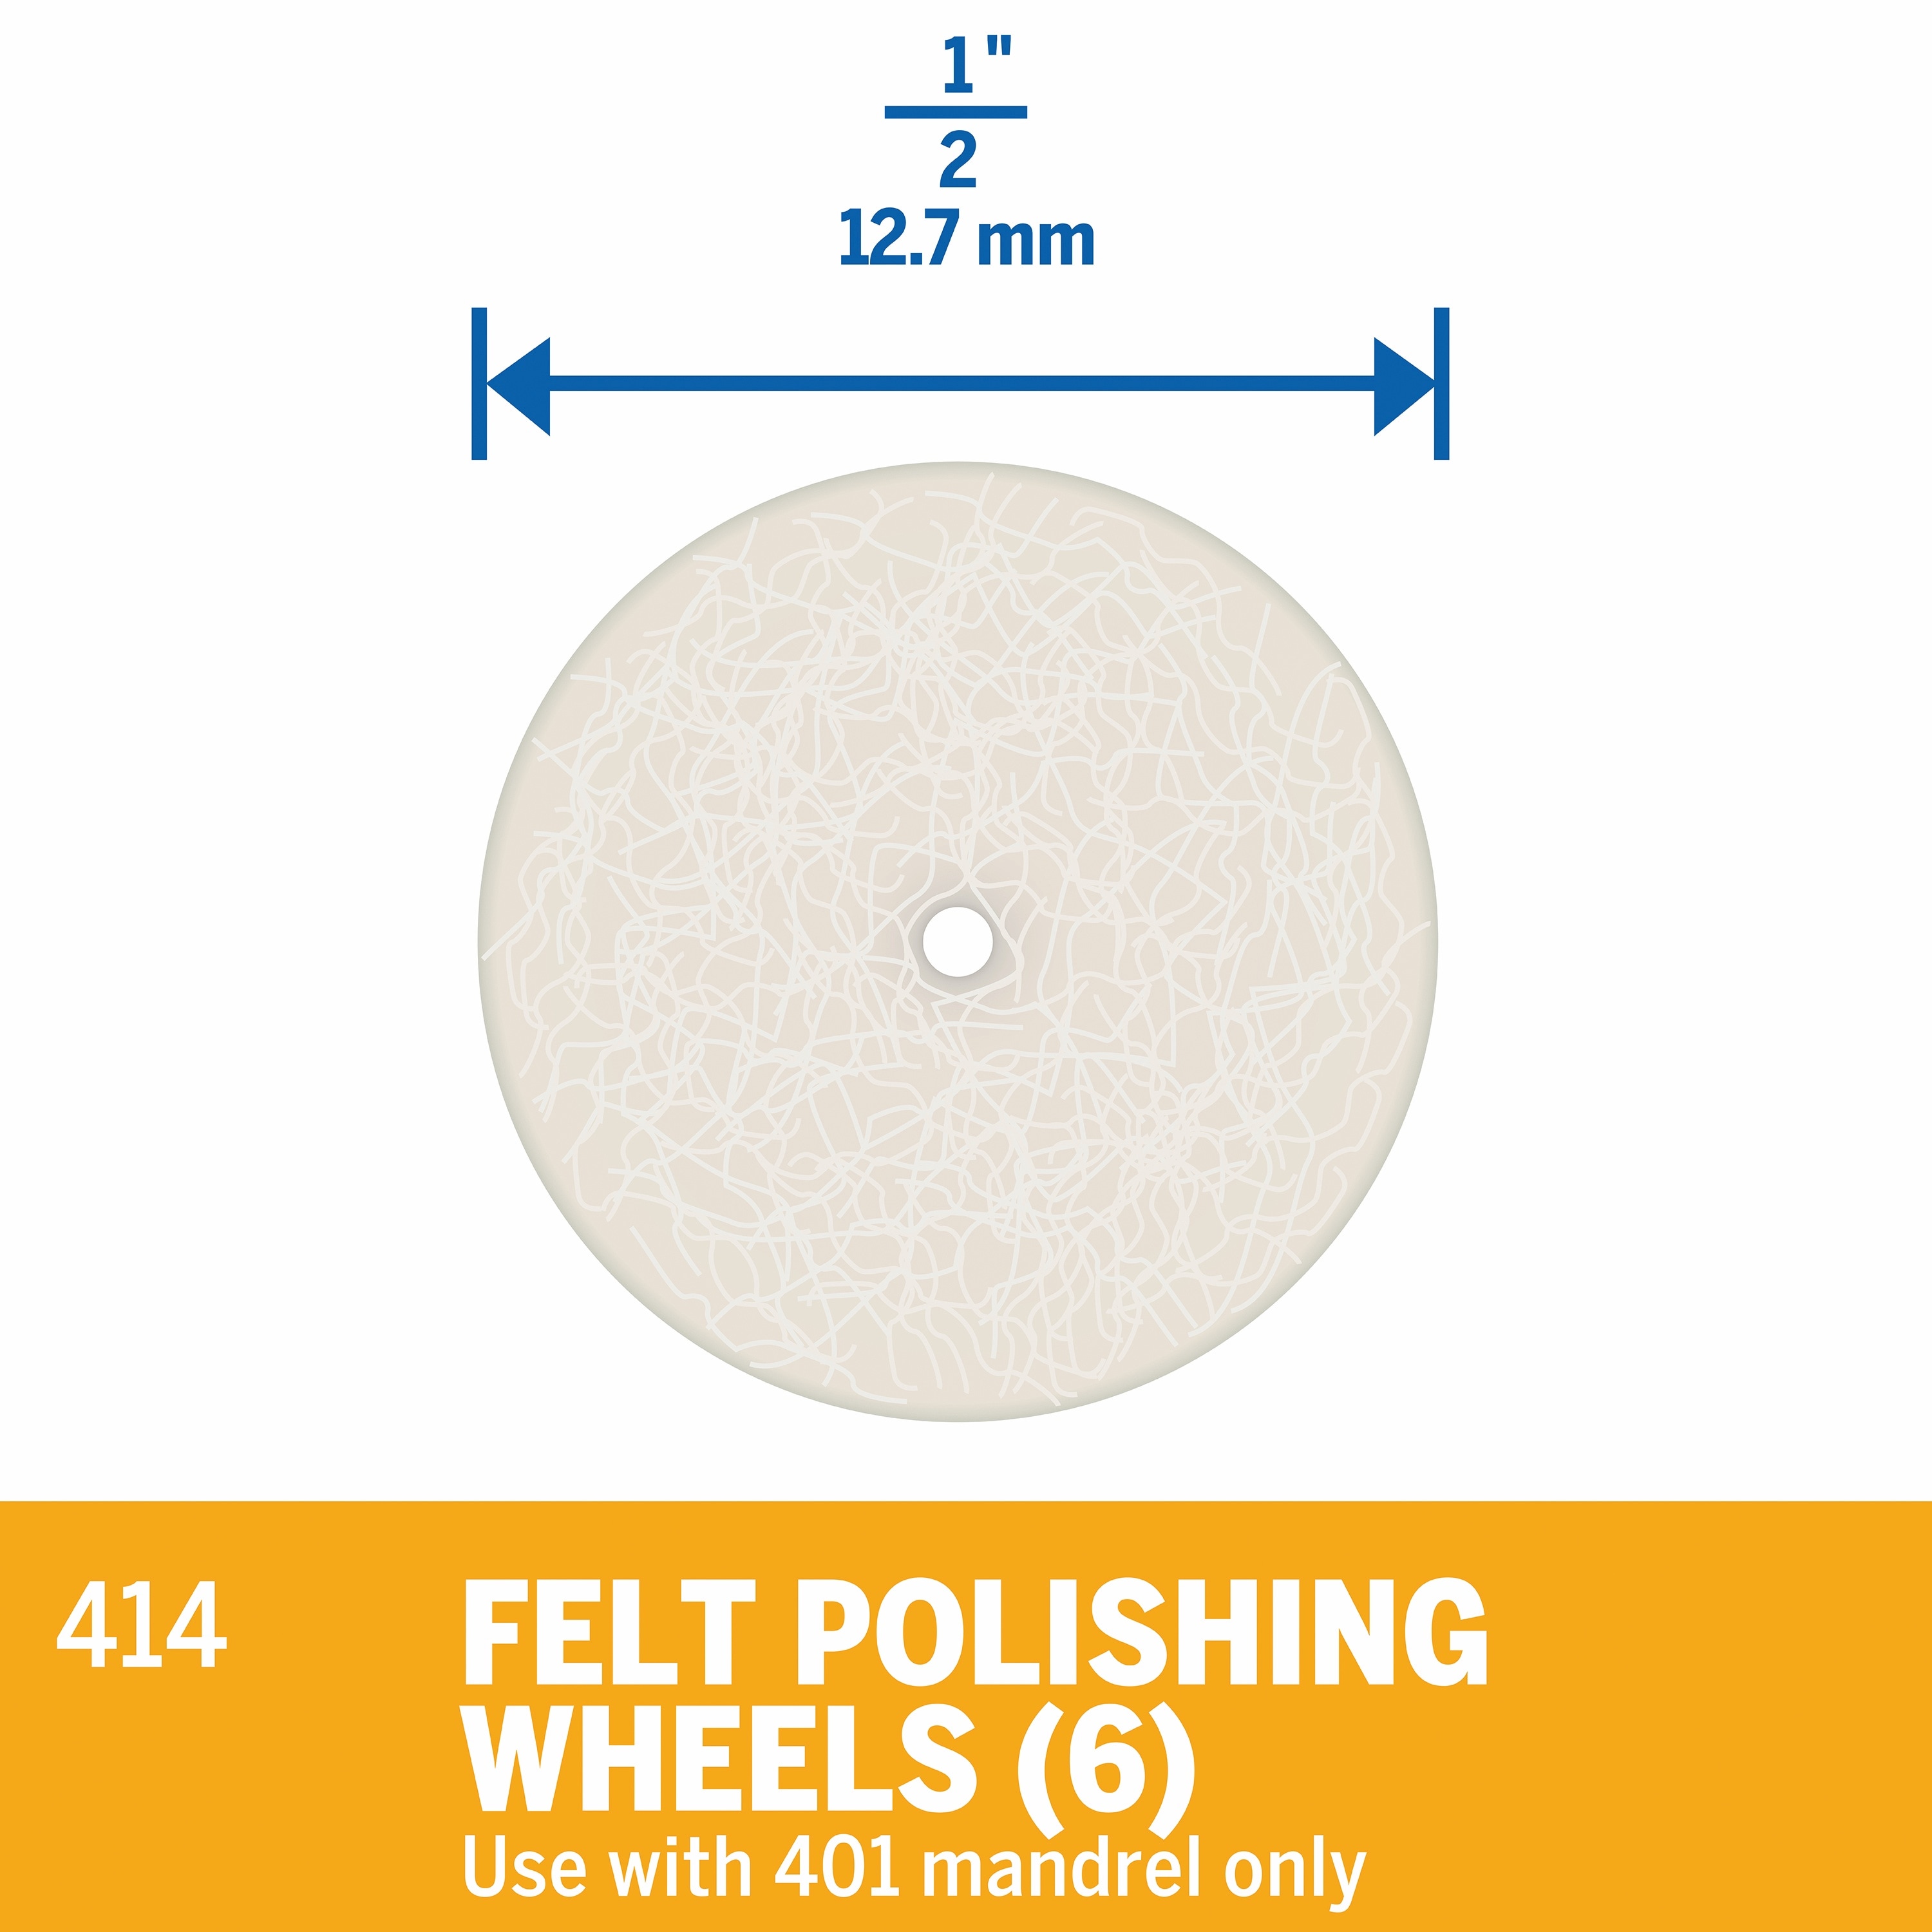 JIALUCONG 10pcs 1/8inch Cashmere Polishing Buffing Wheel for Dremel Polishing Kit - Polishing Wheel or Silver Polish Wheel - Watch Polishing Kit 